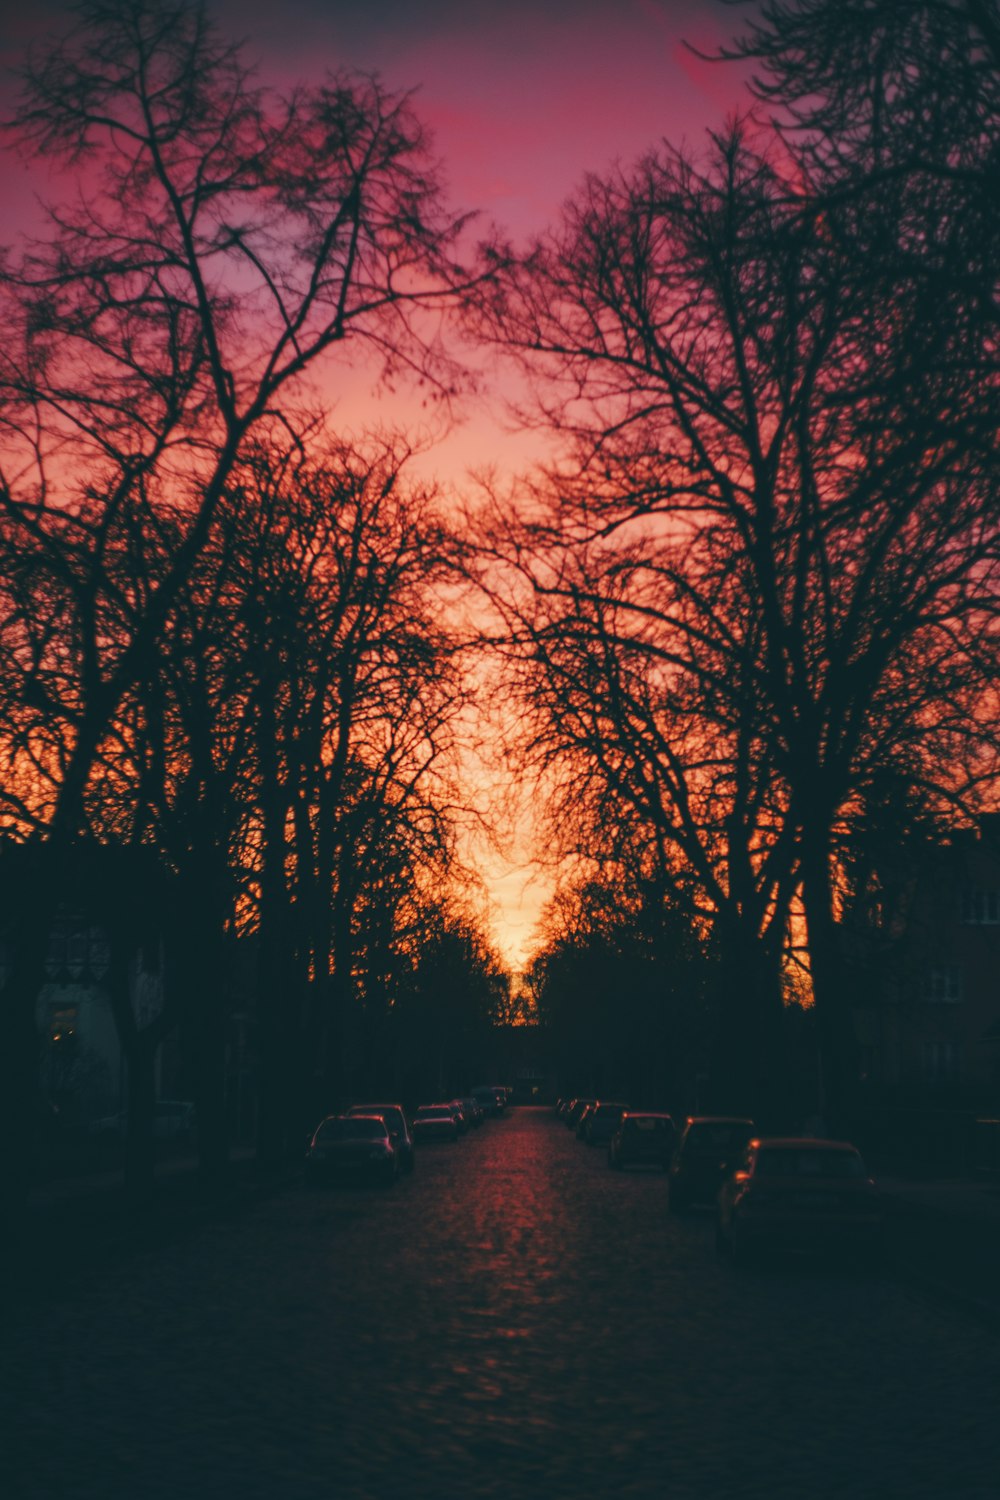 Il sole sta tramontando su una strada fiancheggiata da alberi